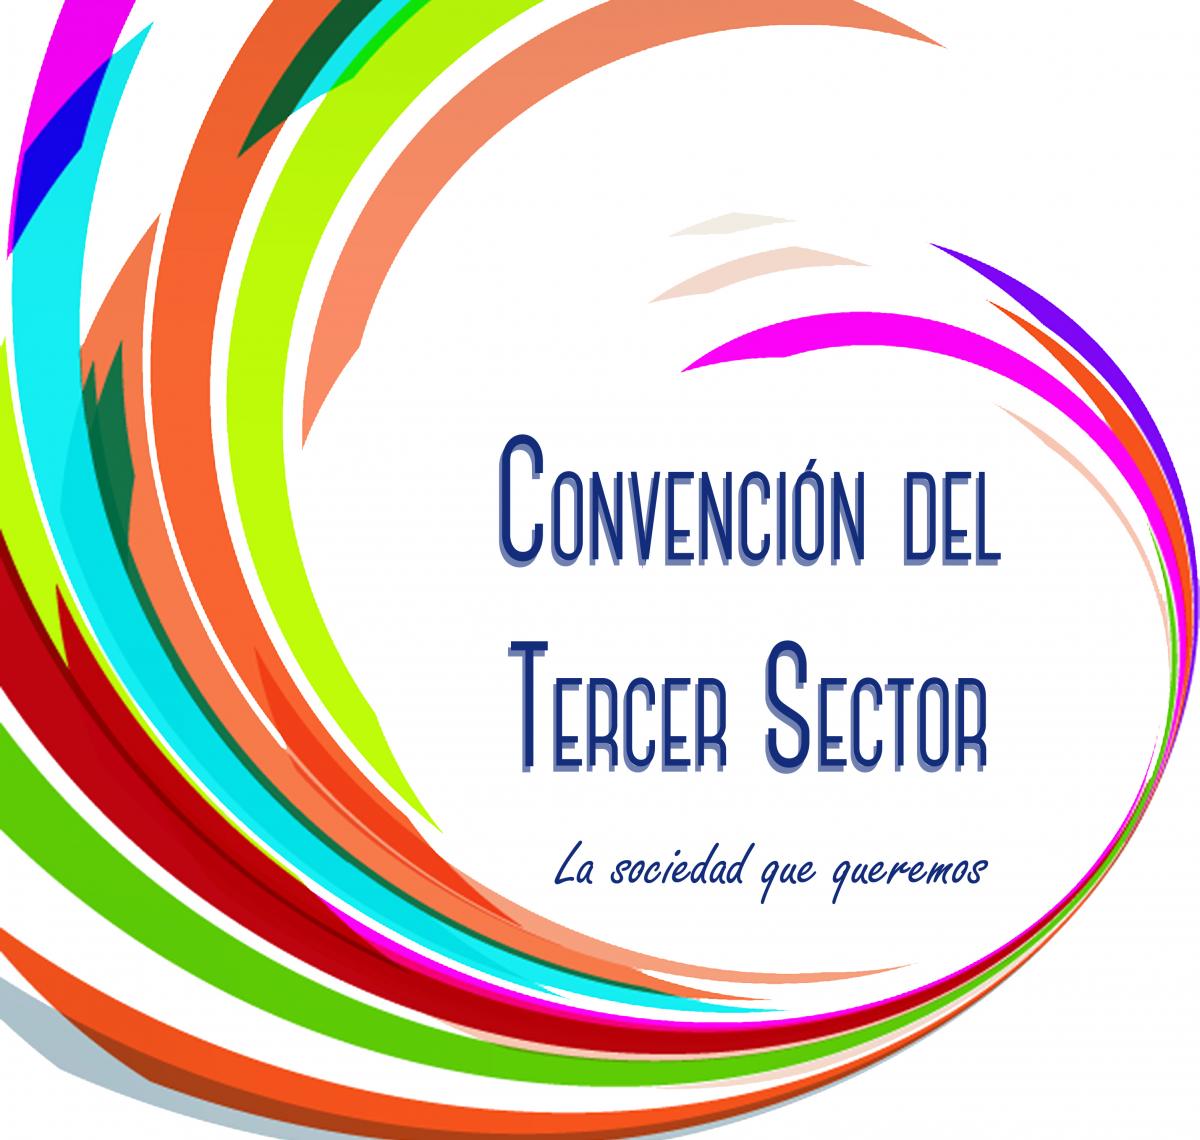 logo de la convención del tercer sector, con su lema 'la sociedad que queremos'